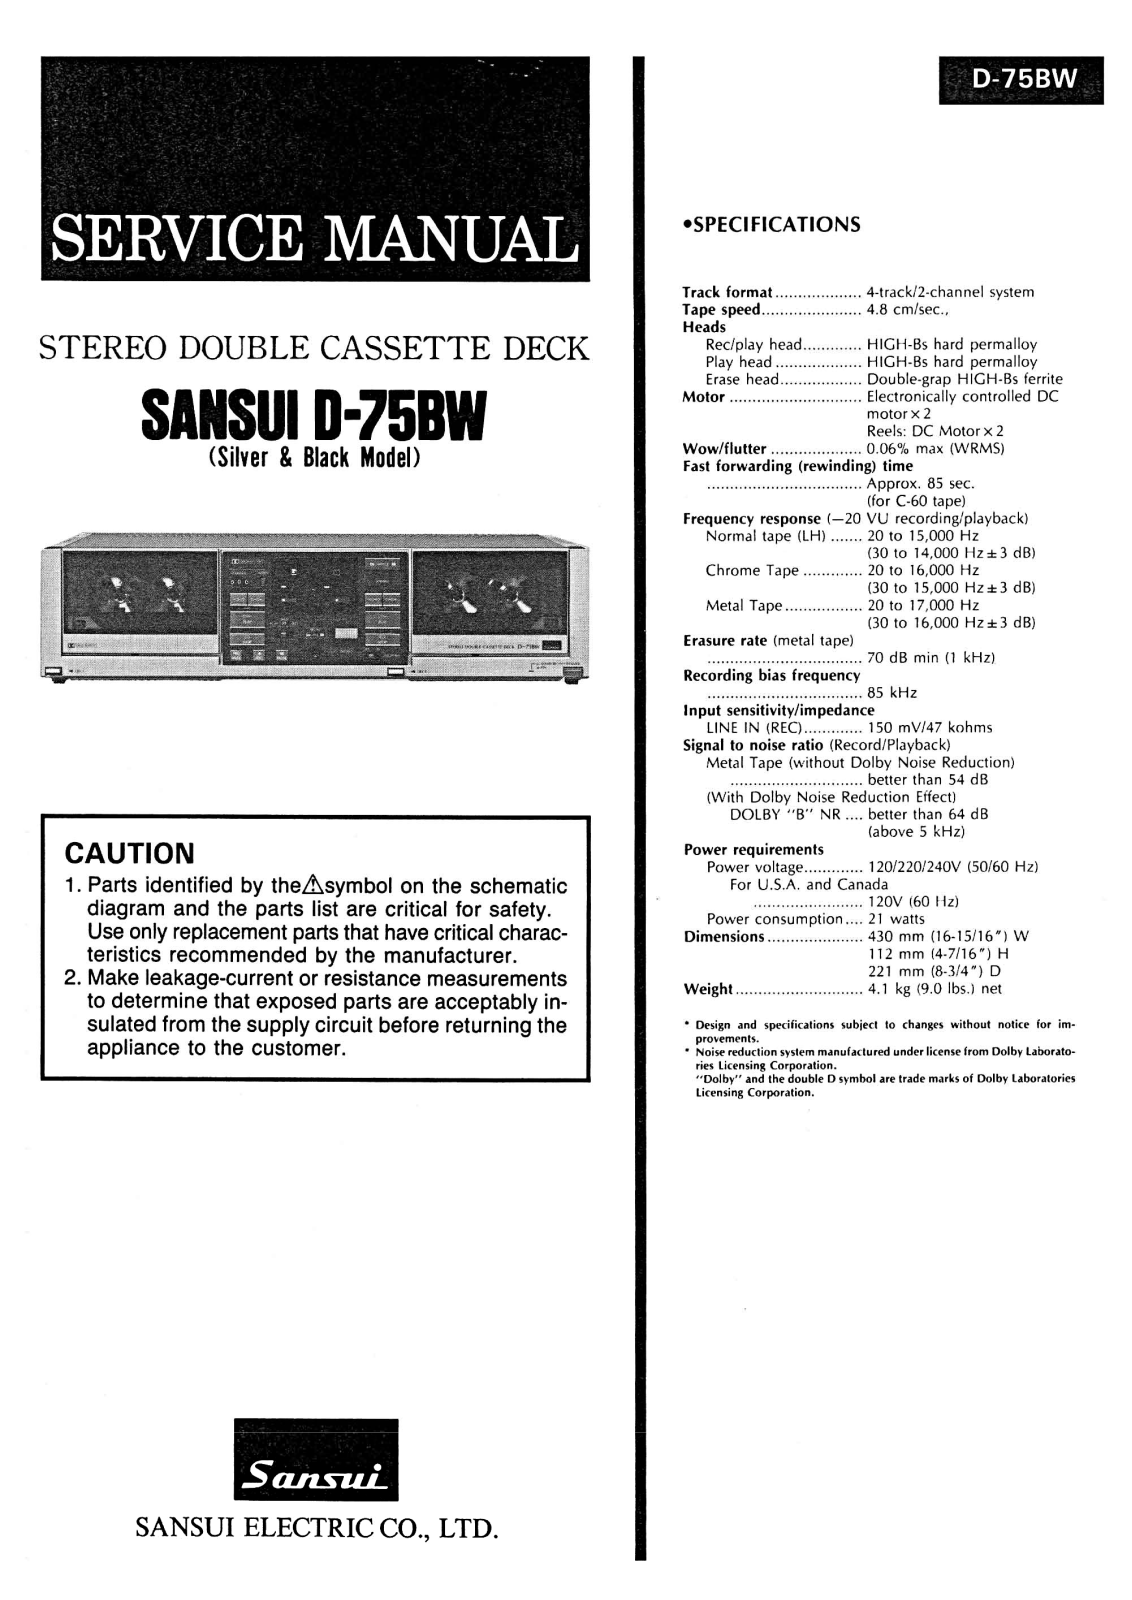 Sansui D-75-BW Service Manual